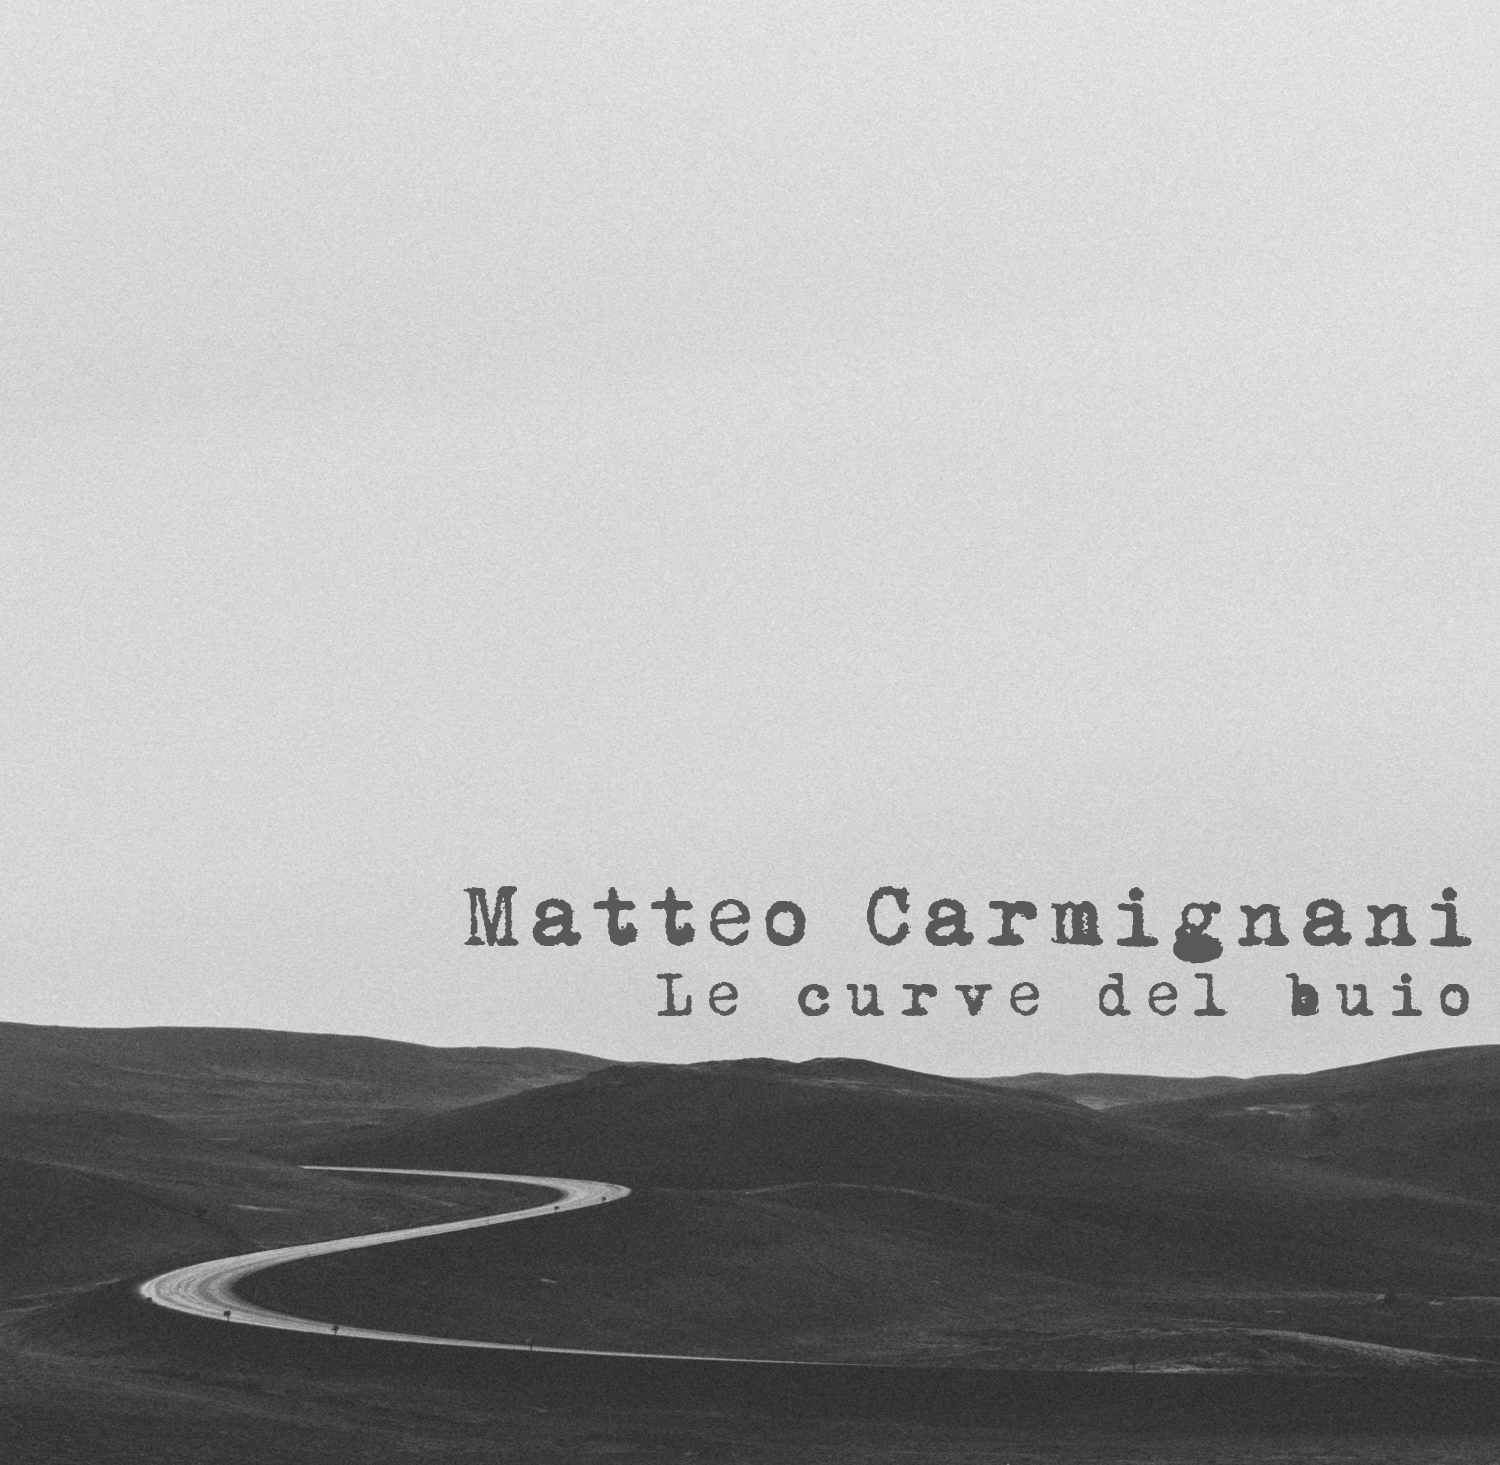 Matteo Carmignani: esce il 20 ottobre l’esordio “Le curve del buio”